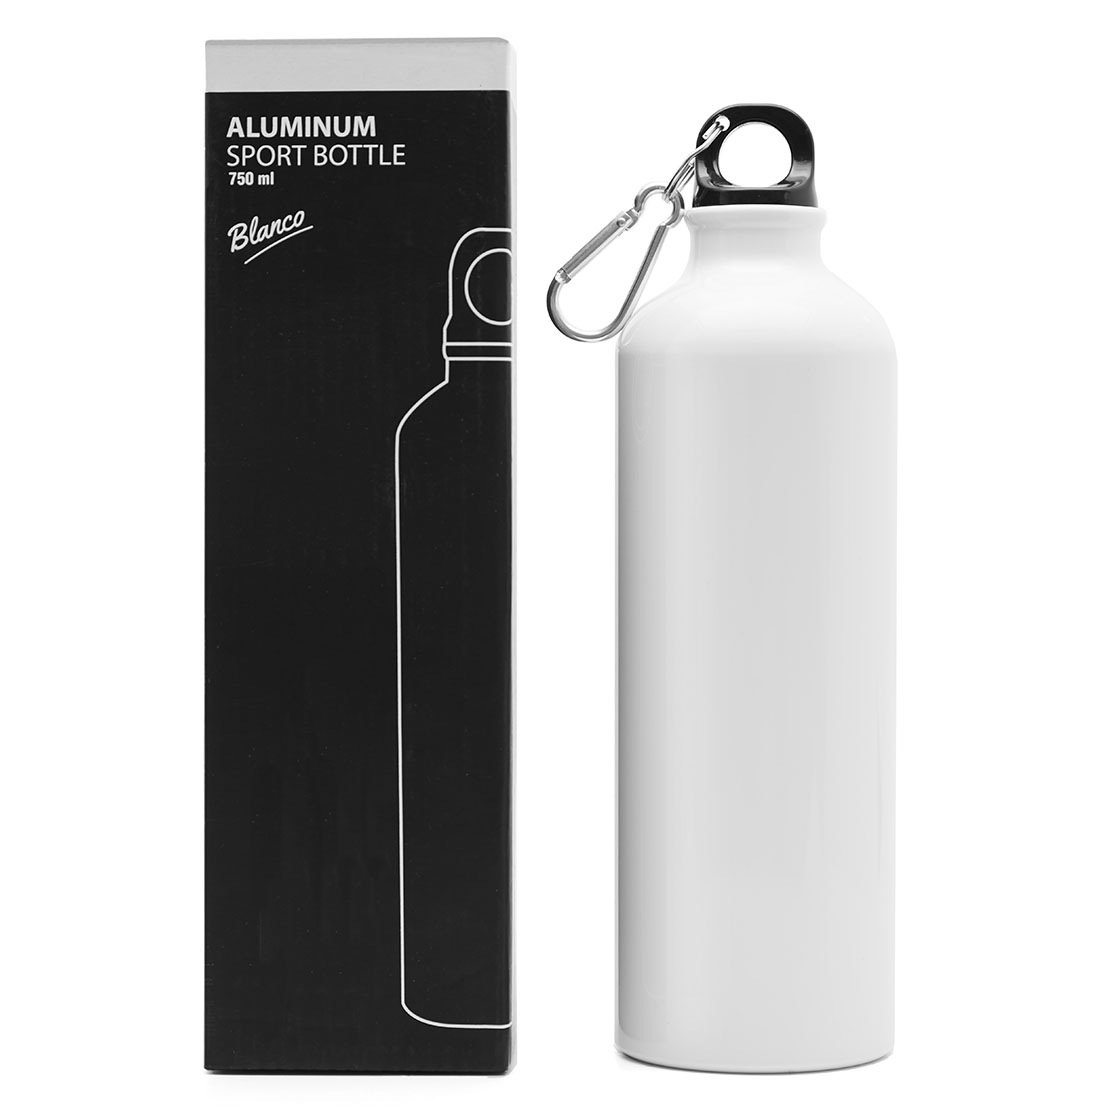 Sport Bottle Aluminum VS 112 750ml | LOGO GRATIS !